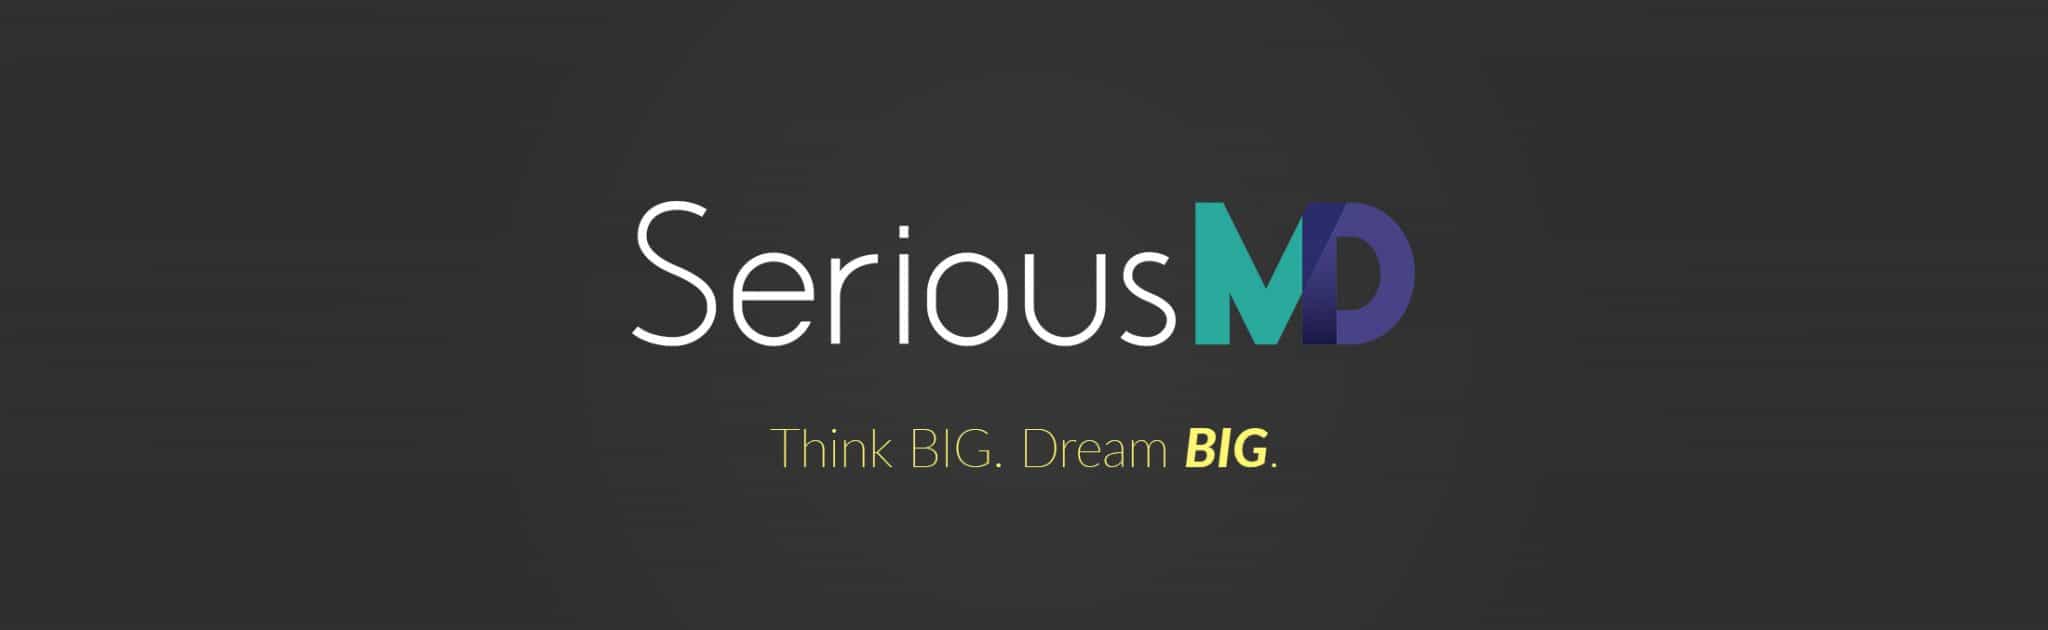 SeriousMD Think Big Dream Big